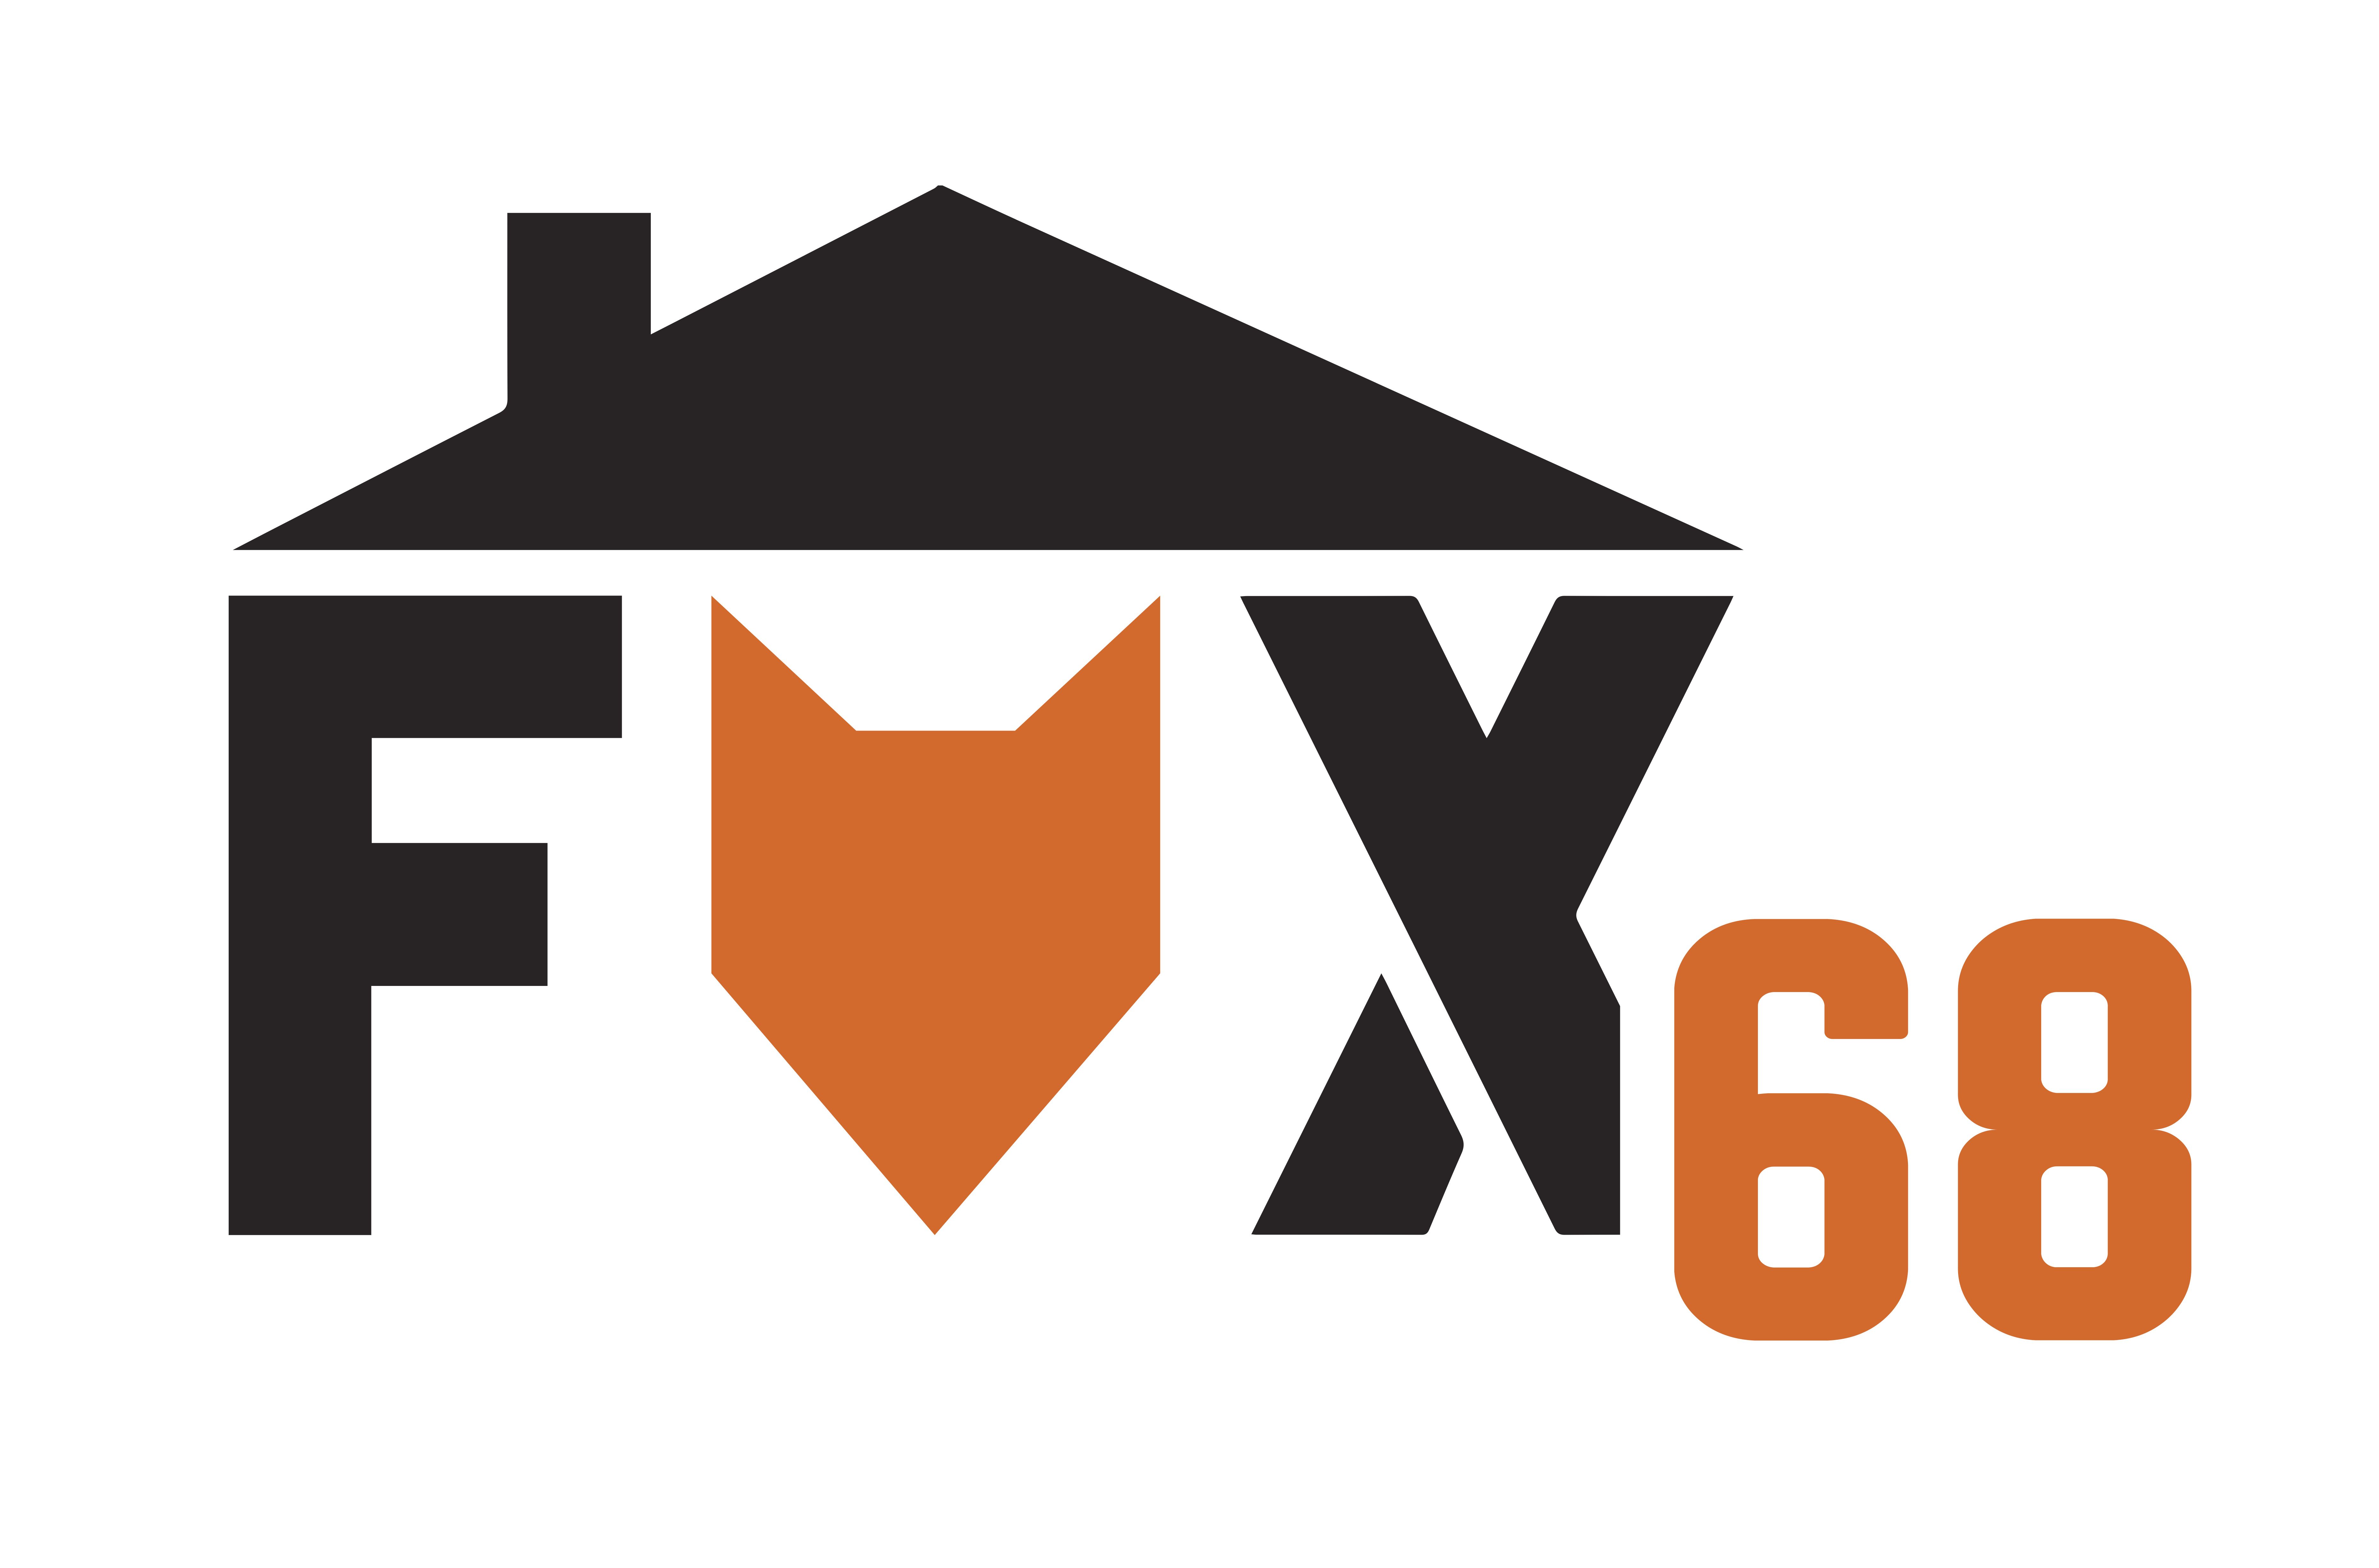 FOX68 Ltd